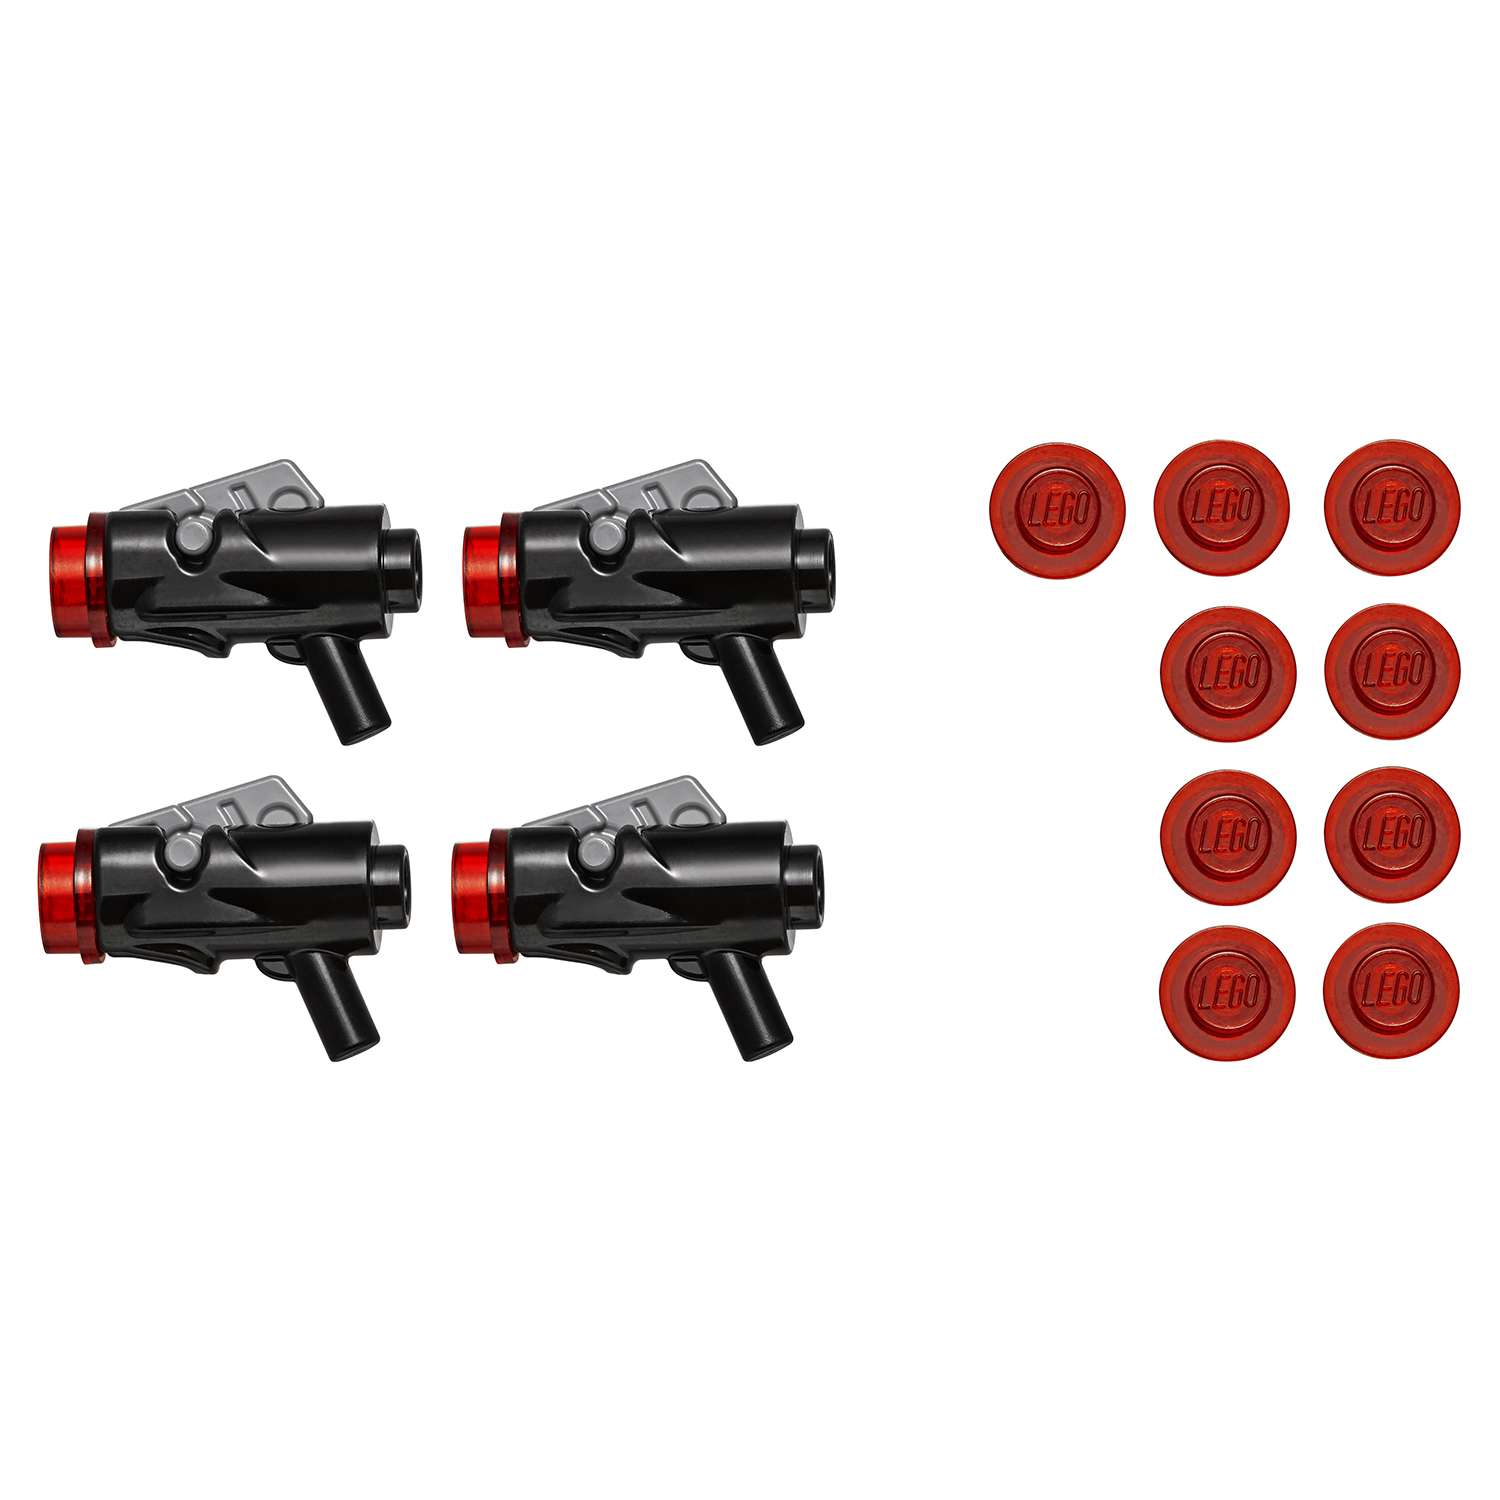 Конструктор LEGO Star Wars TM Боевой набор Первого Ордена (75132) - фото 15